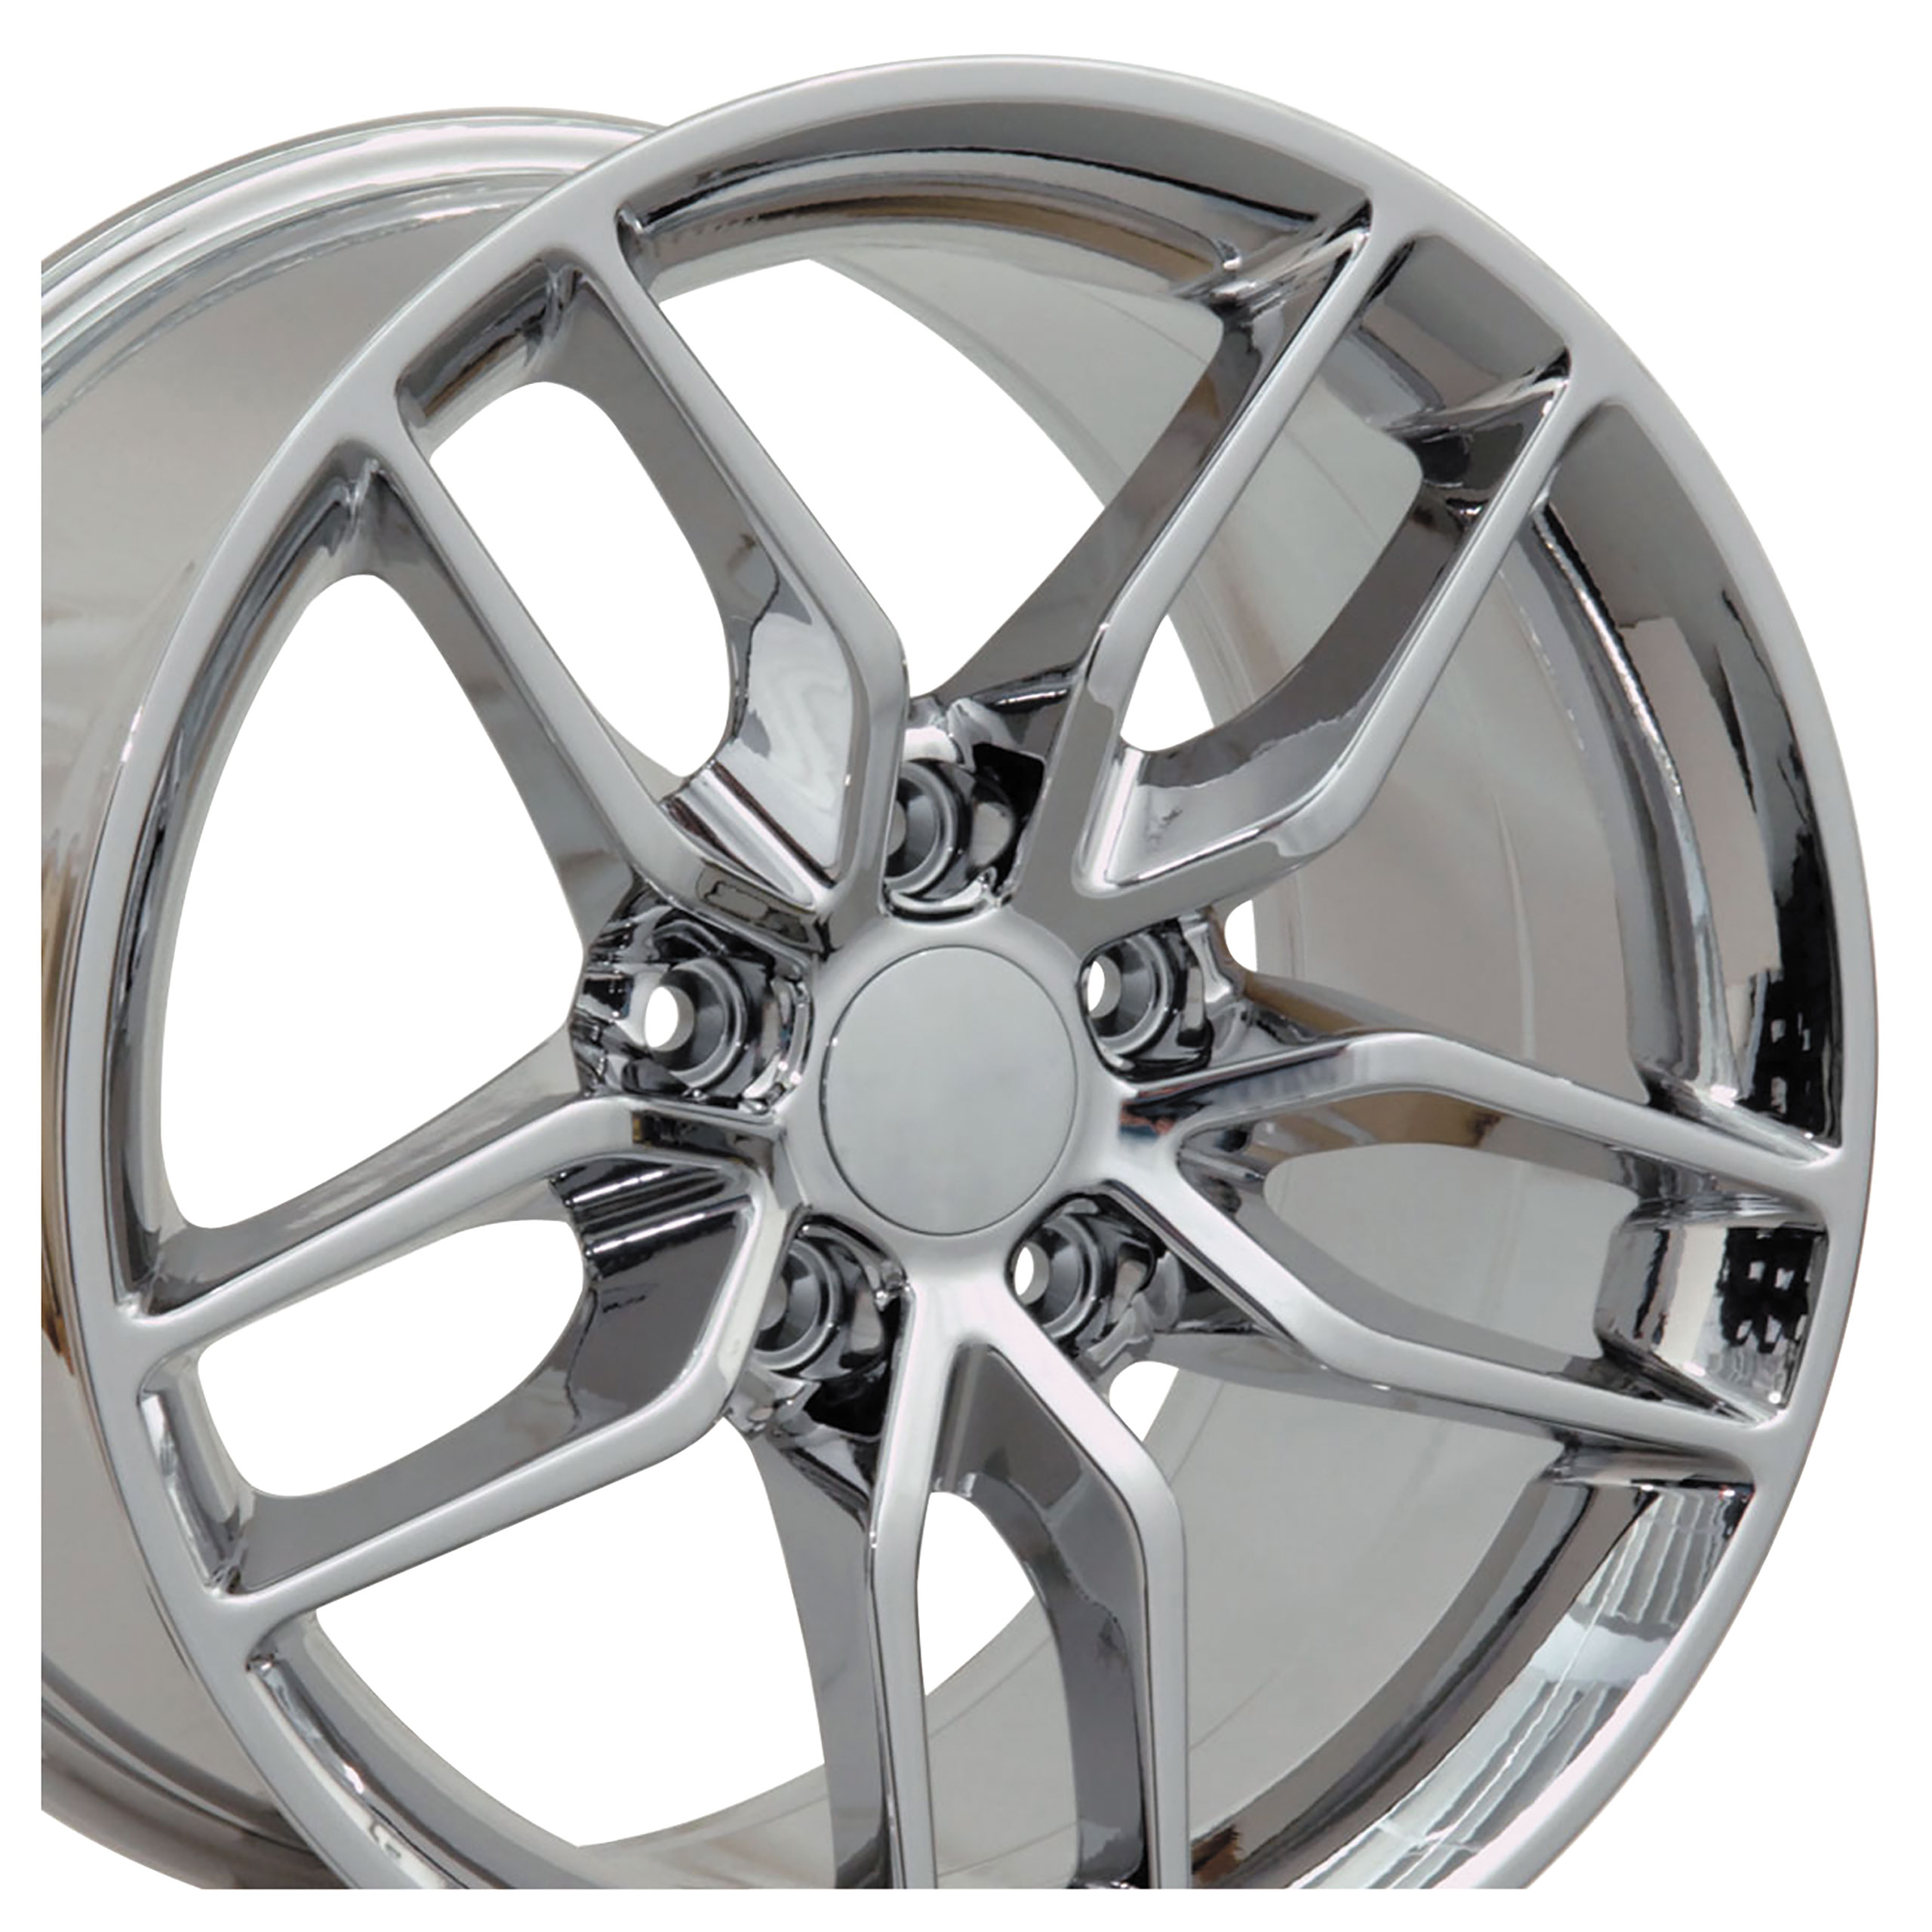 C7 Z51 Style Chrome Wheel 19x10 79mm Offset For 2014-2019 Corvette